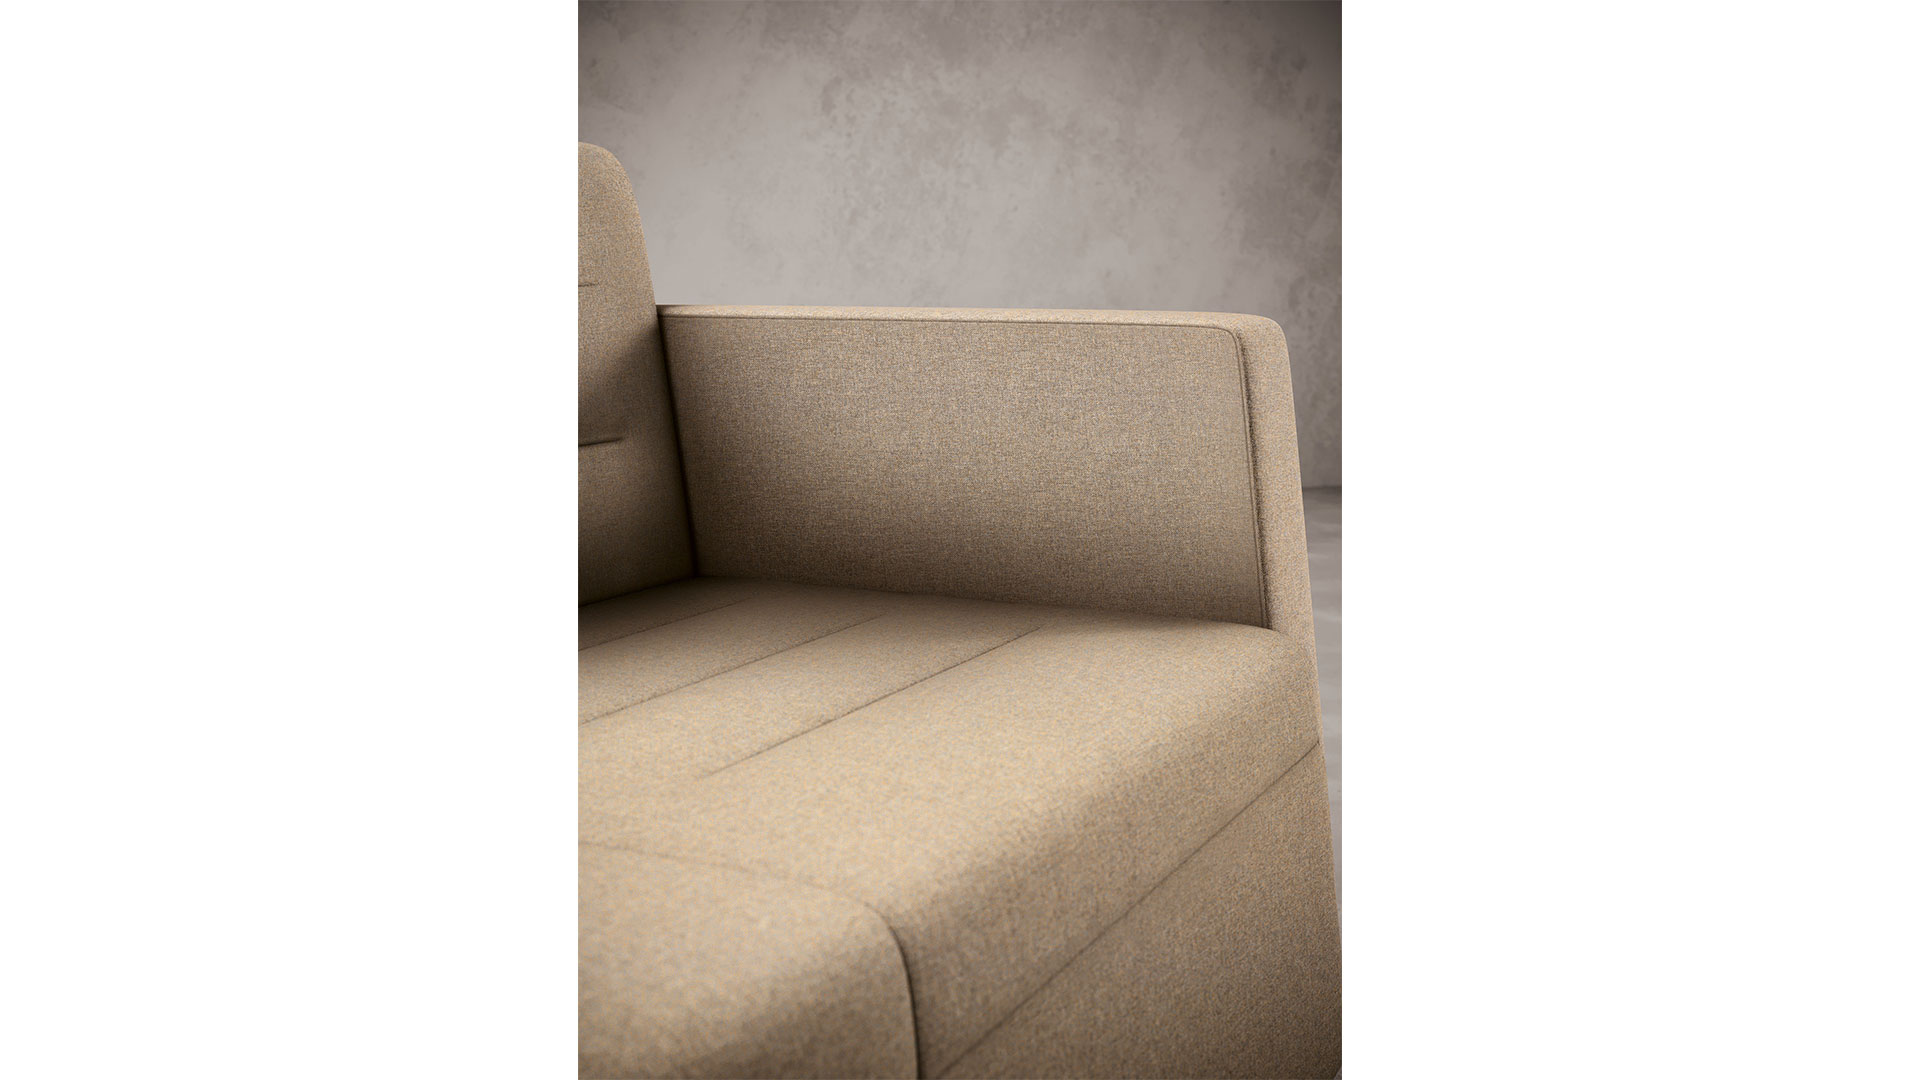 Трапециевидные подлокотники и декоративная прострочка — яркие особенности дивана